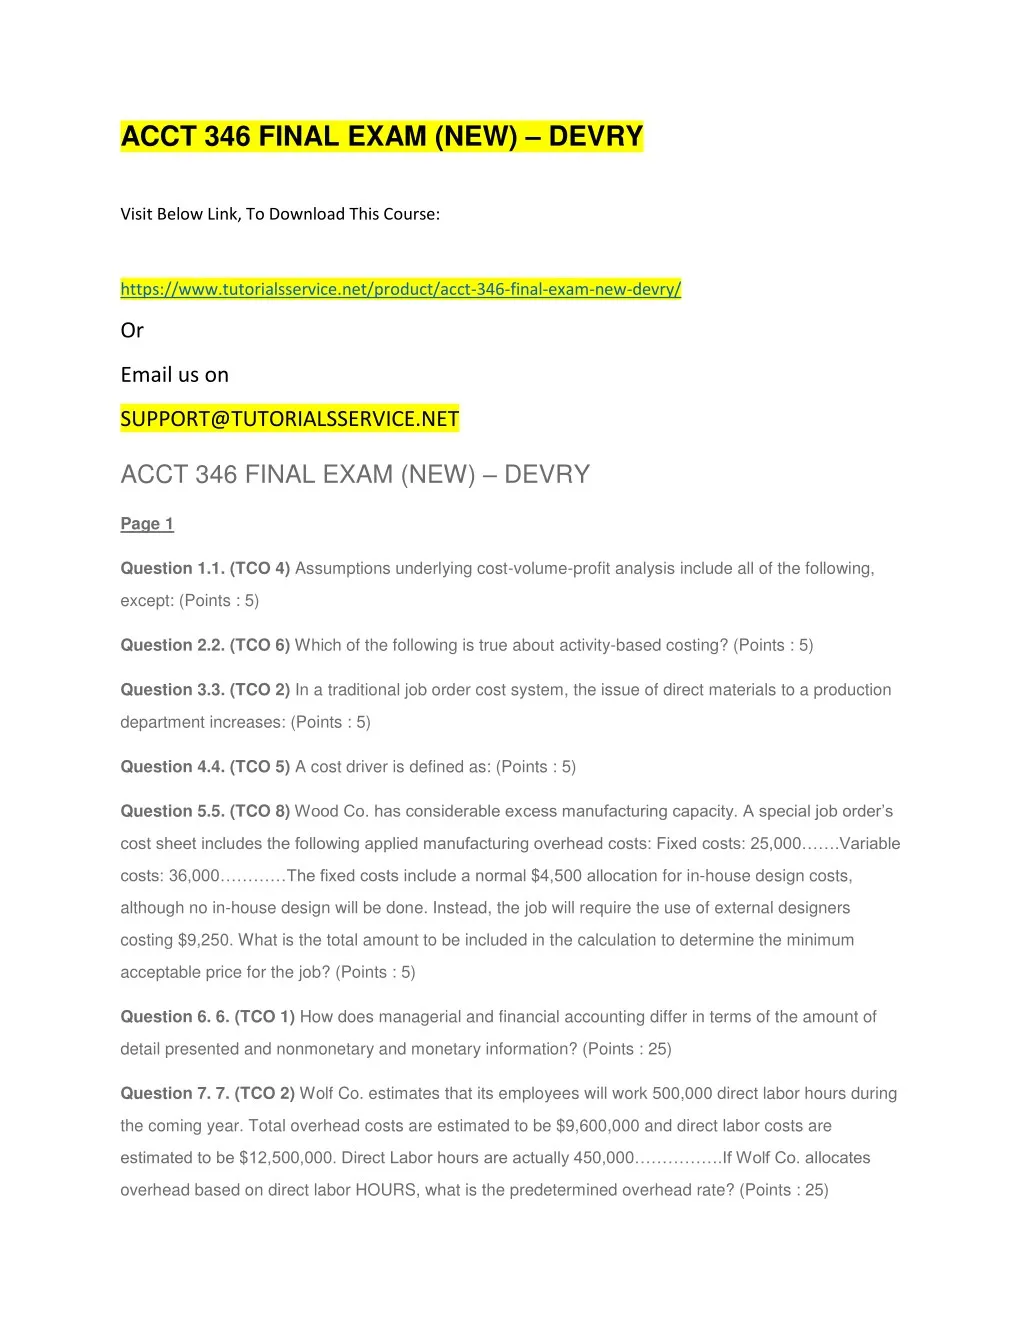 acct 346 final exam new devry